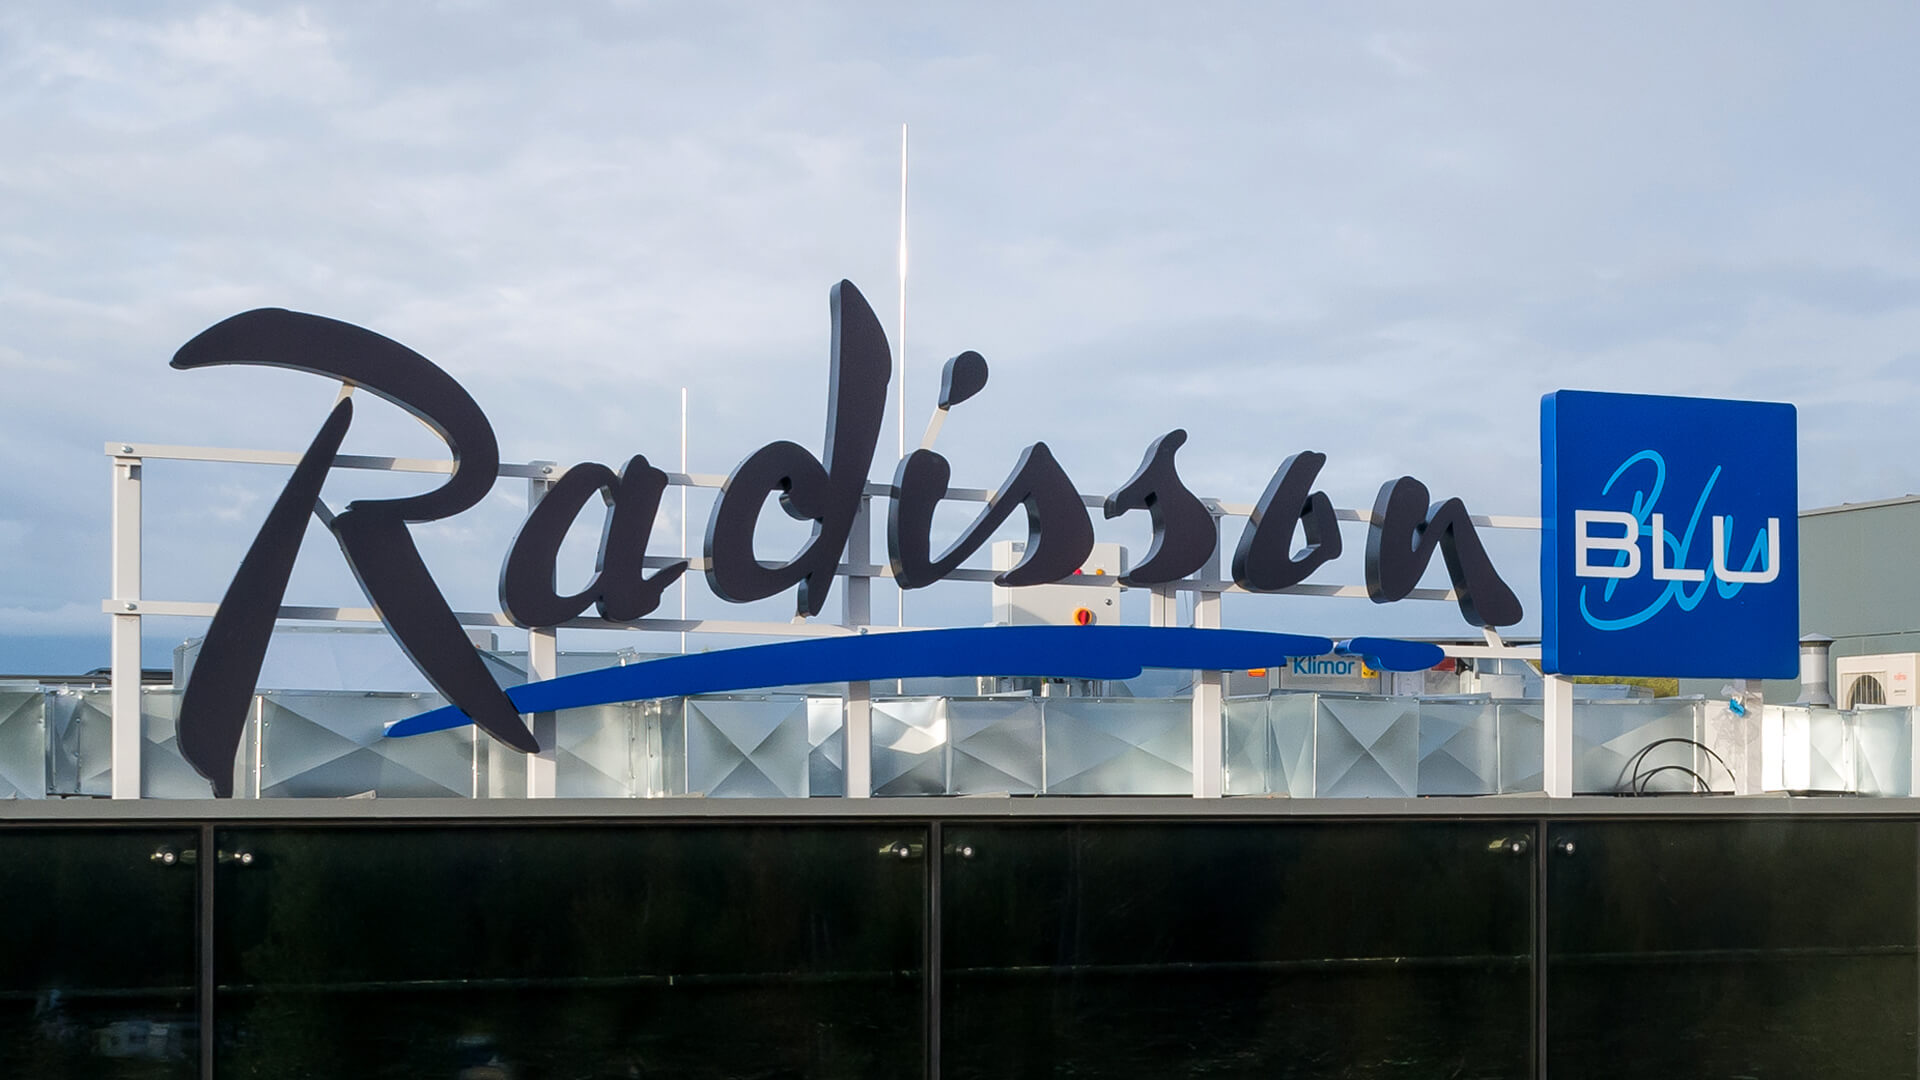 radisson-blu-sopot-letters-black - & - whte - letters-black&white-under-light-led-advertising-logos-radisson-blu-sopot-space-letters-block-letters-on-metal-construction